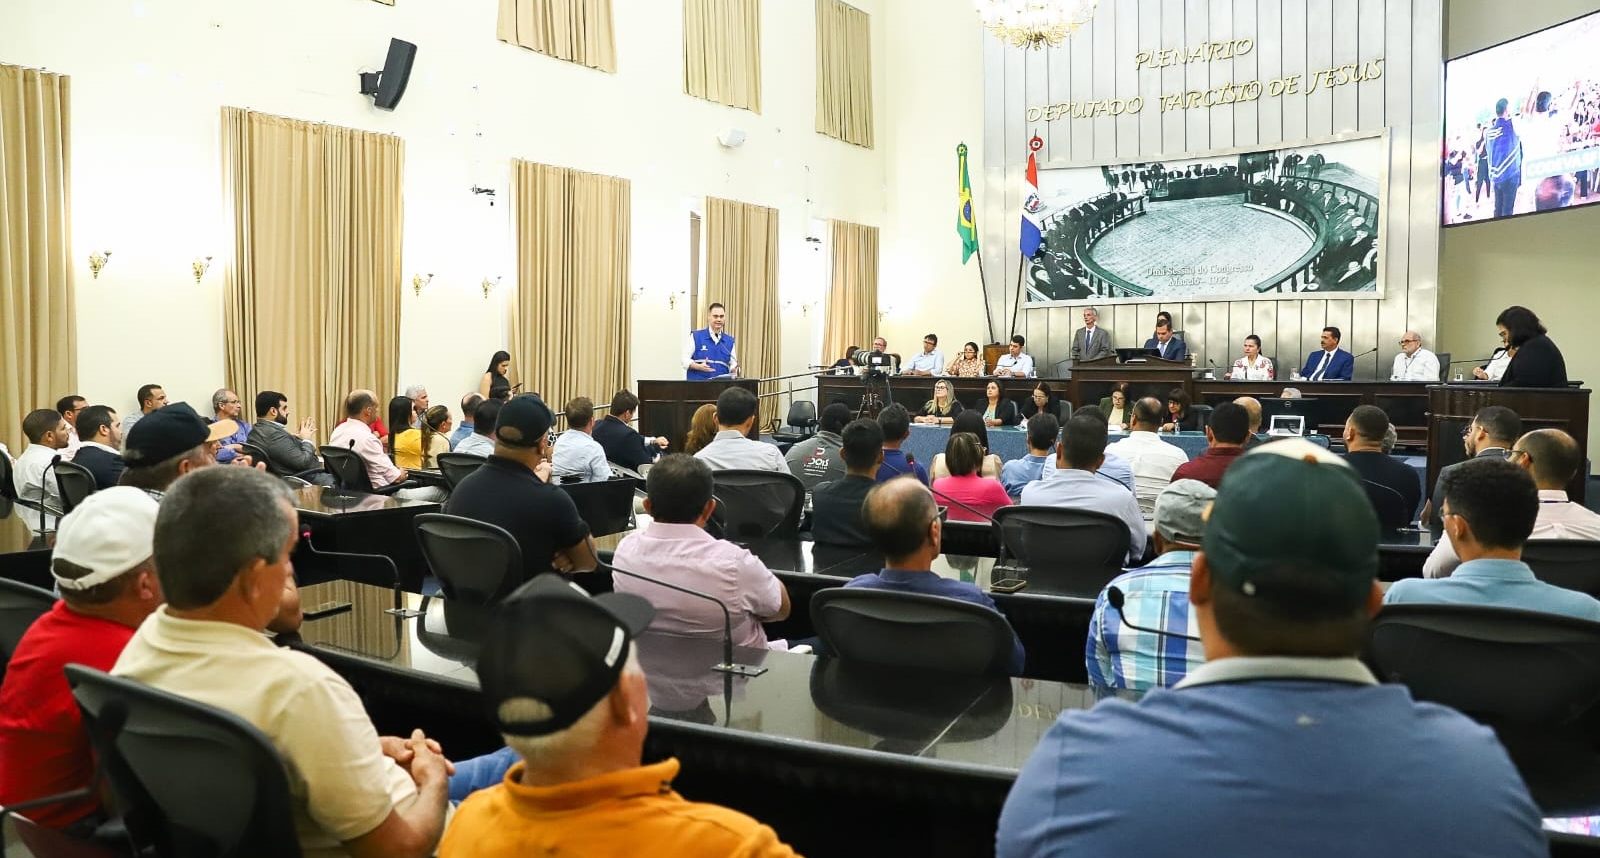 Codevasf recebe homenagem por seus 50 anos na Assembleia Legislativa de Alagoas 4.jpeg